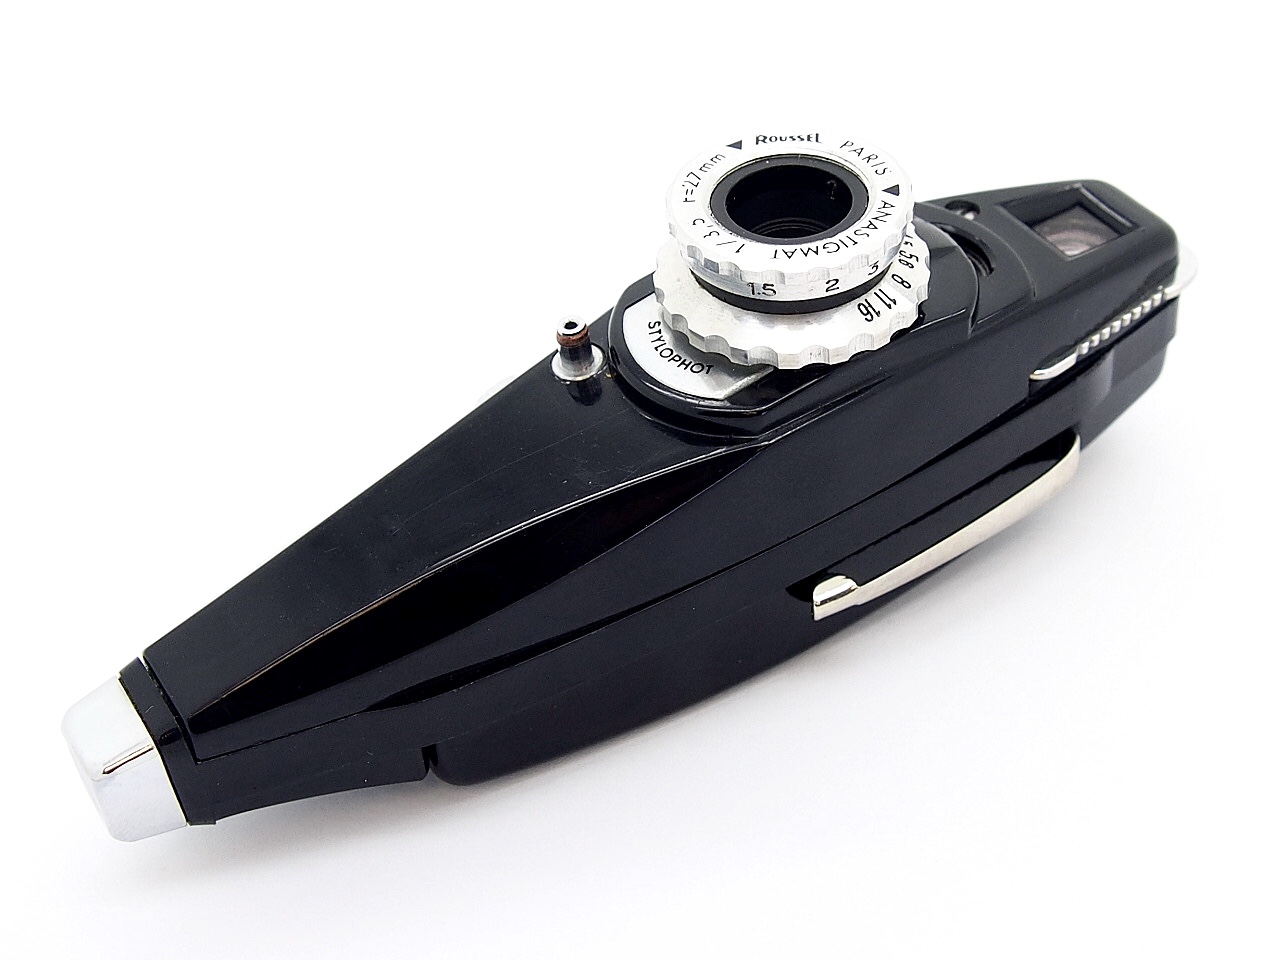 Secam Stylophot Deluxe 16mm Pen-Type Camera #7237